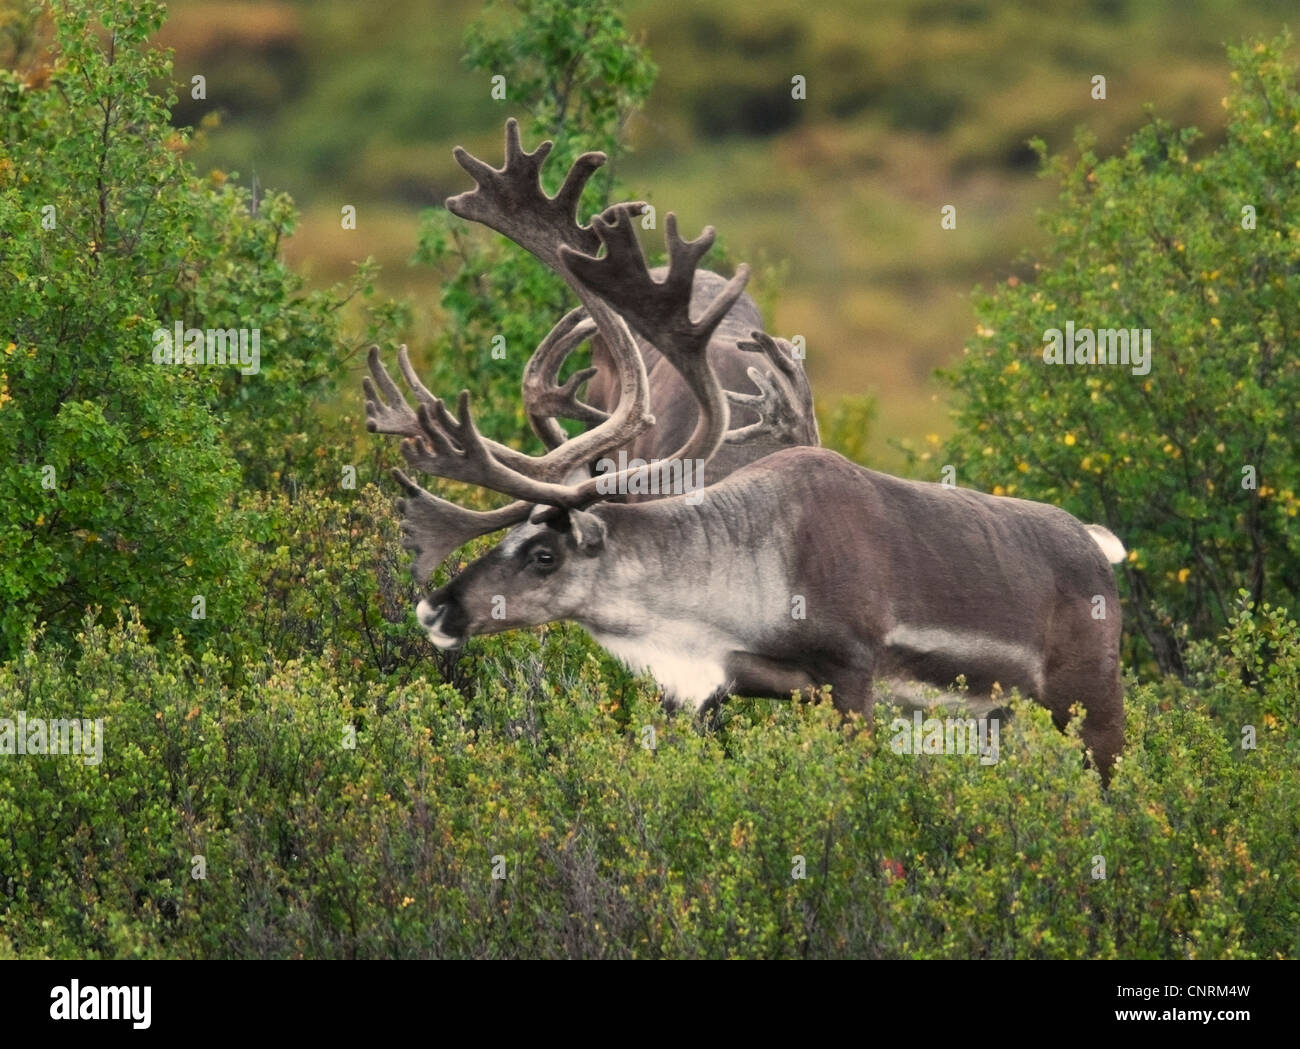 Les taureaux de caribou (Rangifer tarandus) avec bois en velours de se nourrir de la végétation durant les mois d'été en Alaska Banque D'Images